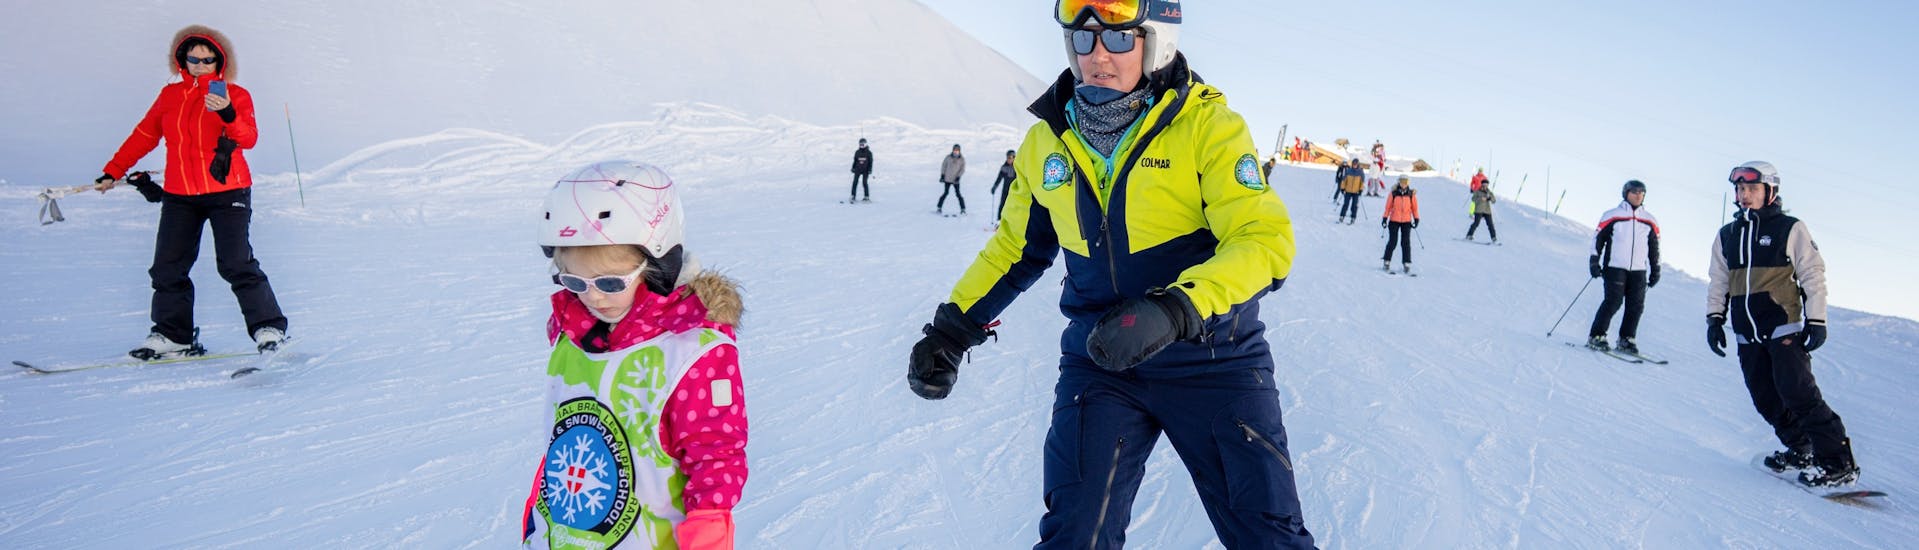 Privater Ski-Kurs für Kinder und Jugendliche aller Altersstufen.